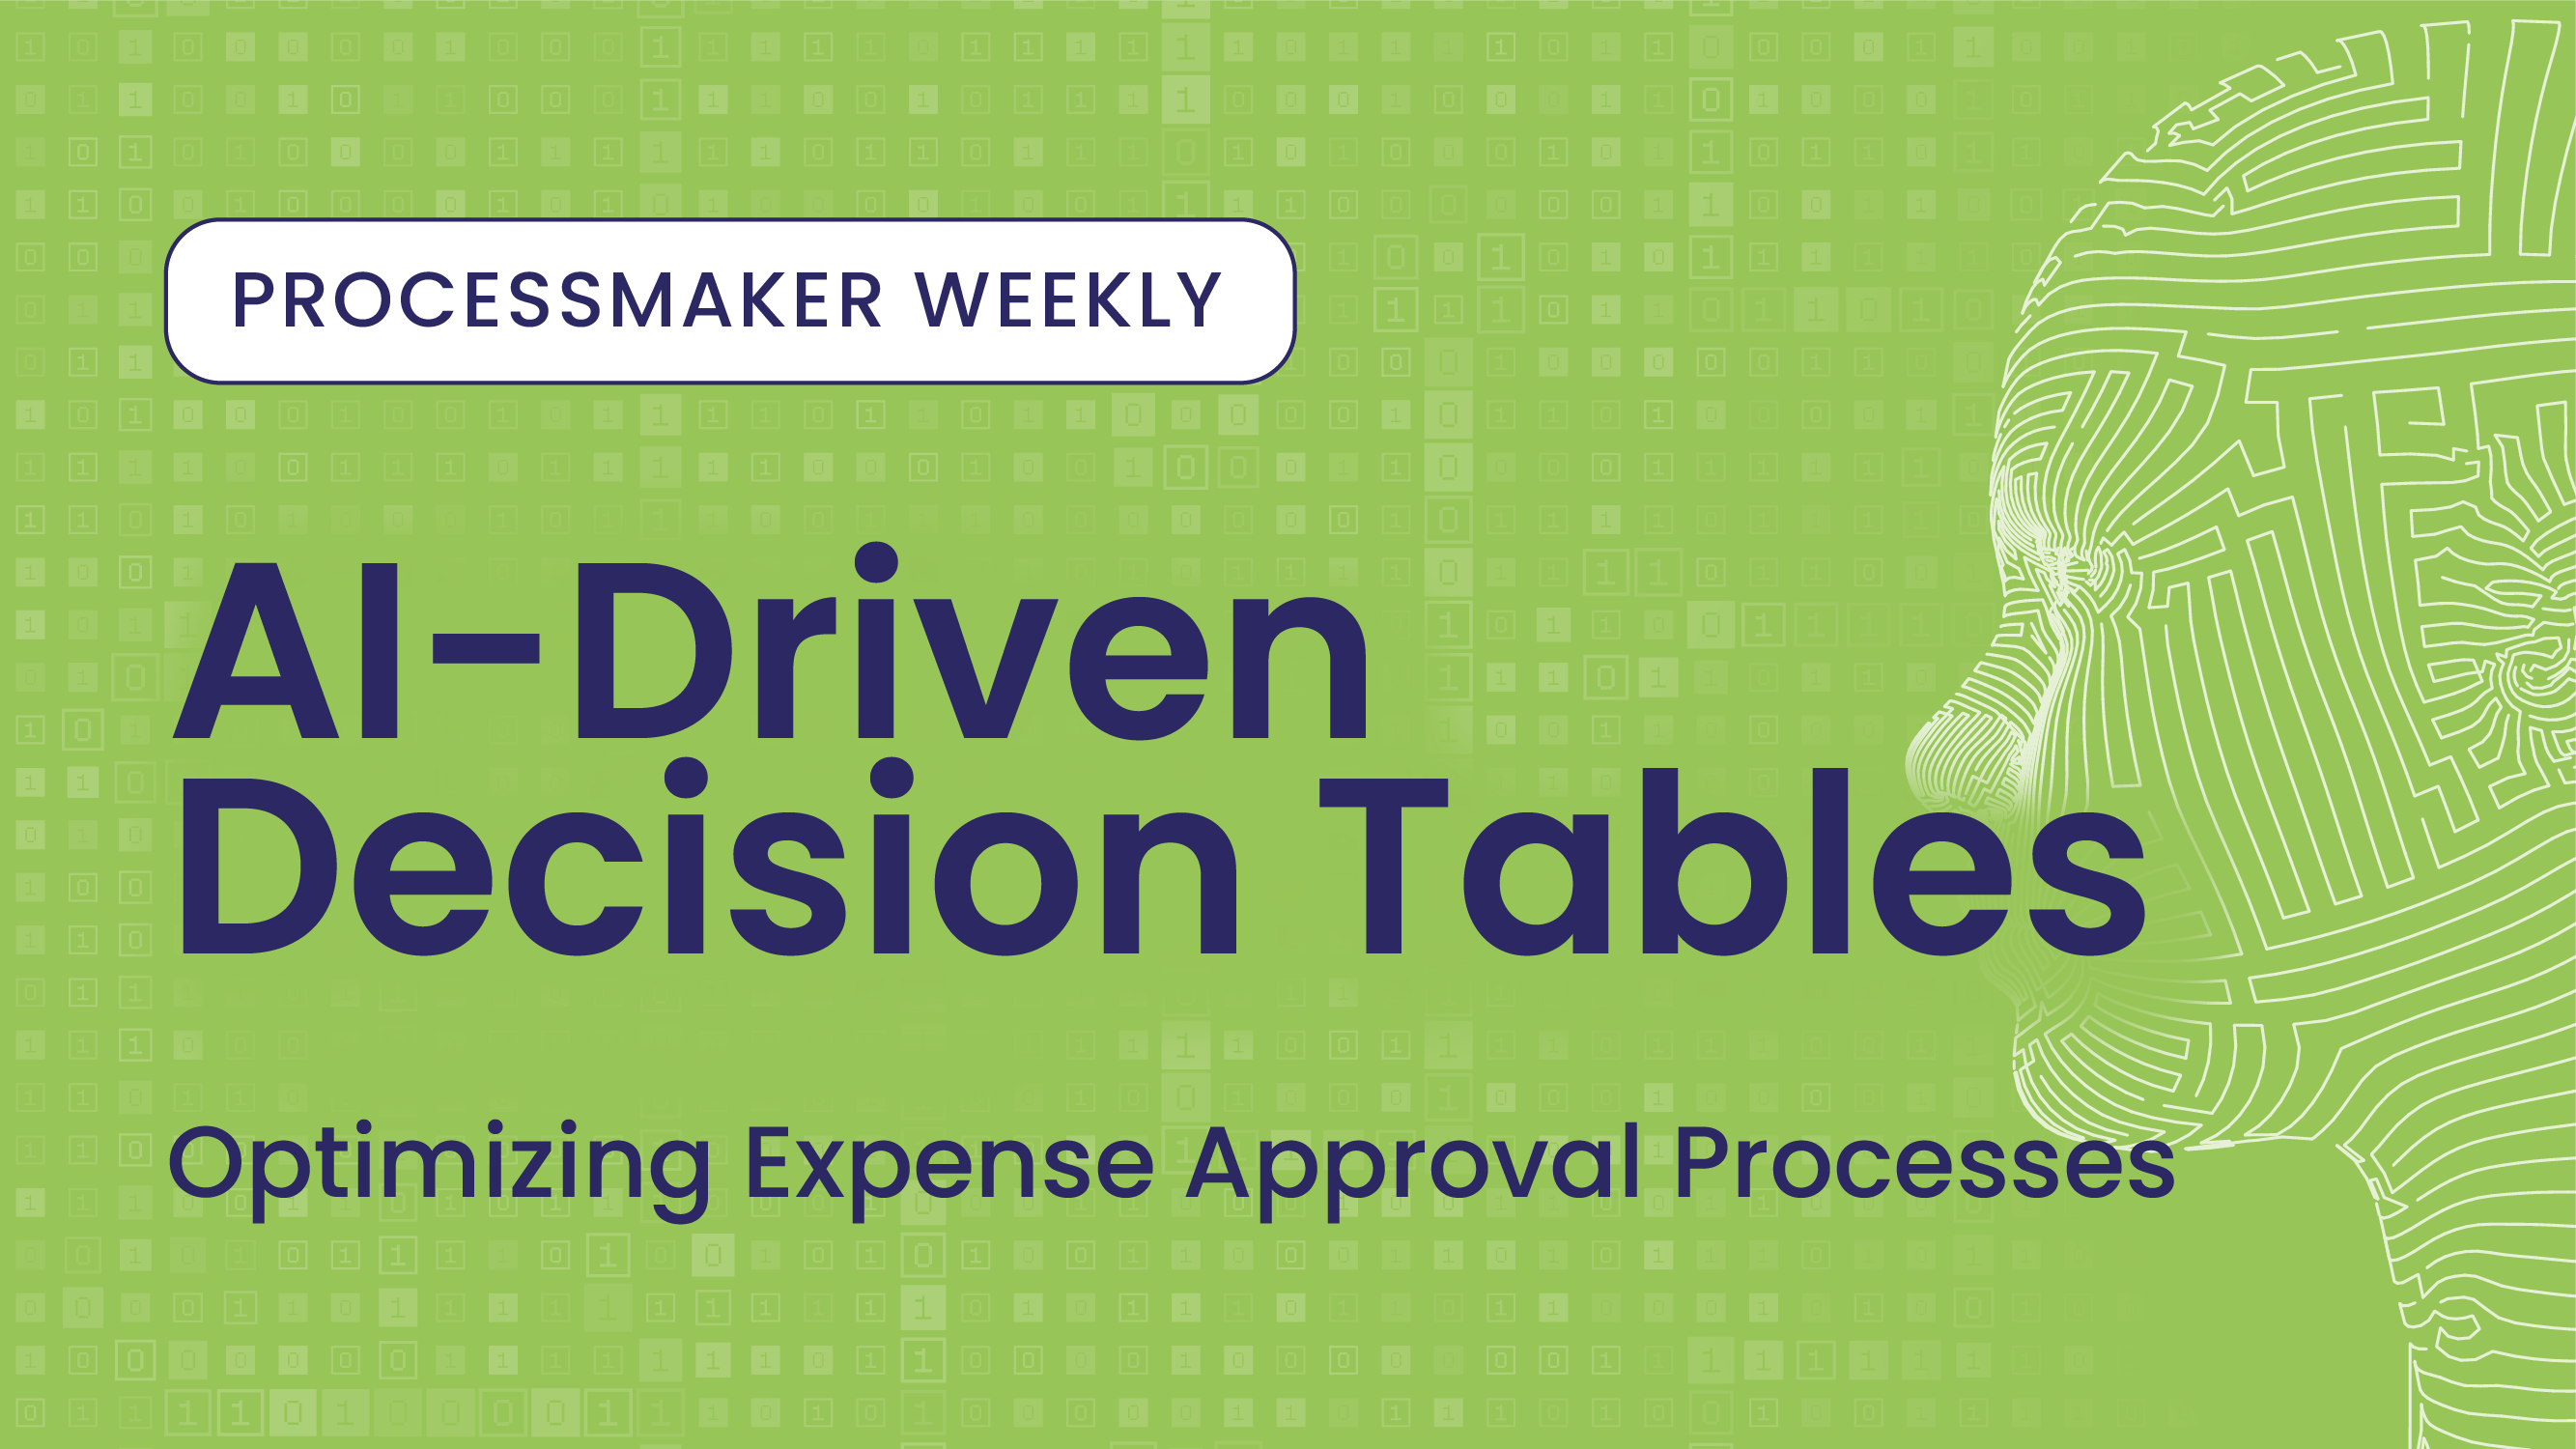 ProcessMaker Weekly : Tables de décision pilotées par l'IA : Optimiser les processus d'approbation des dépenses